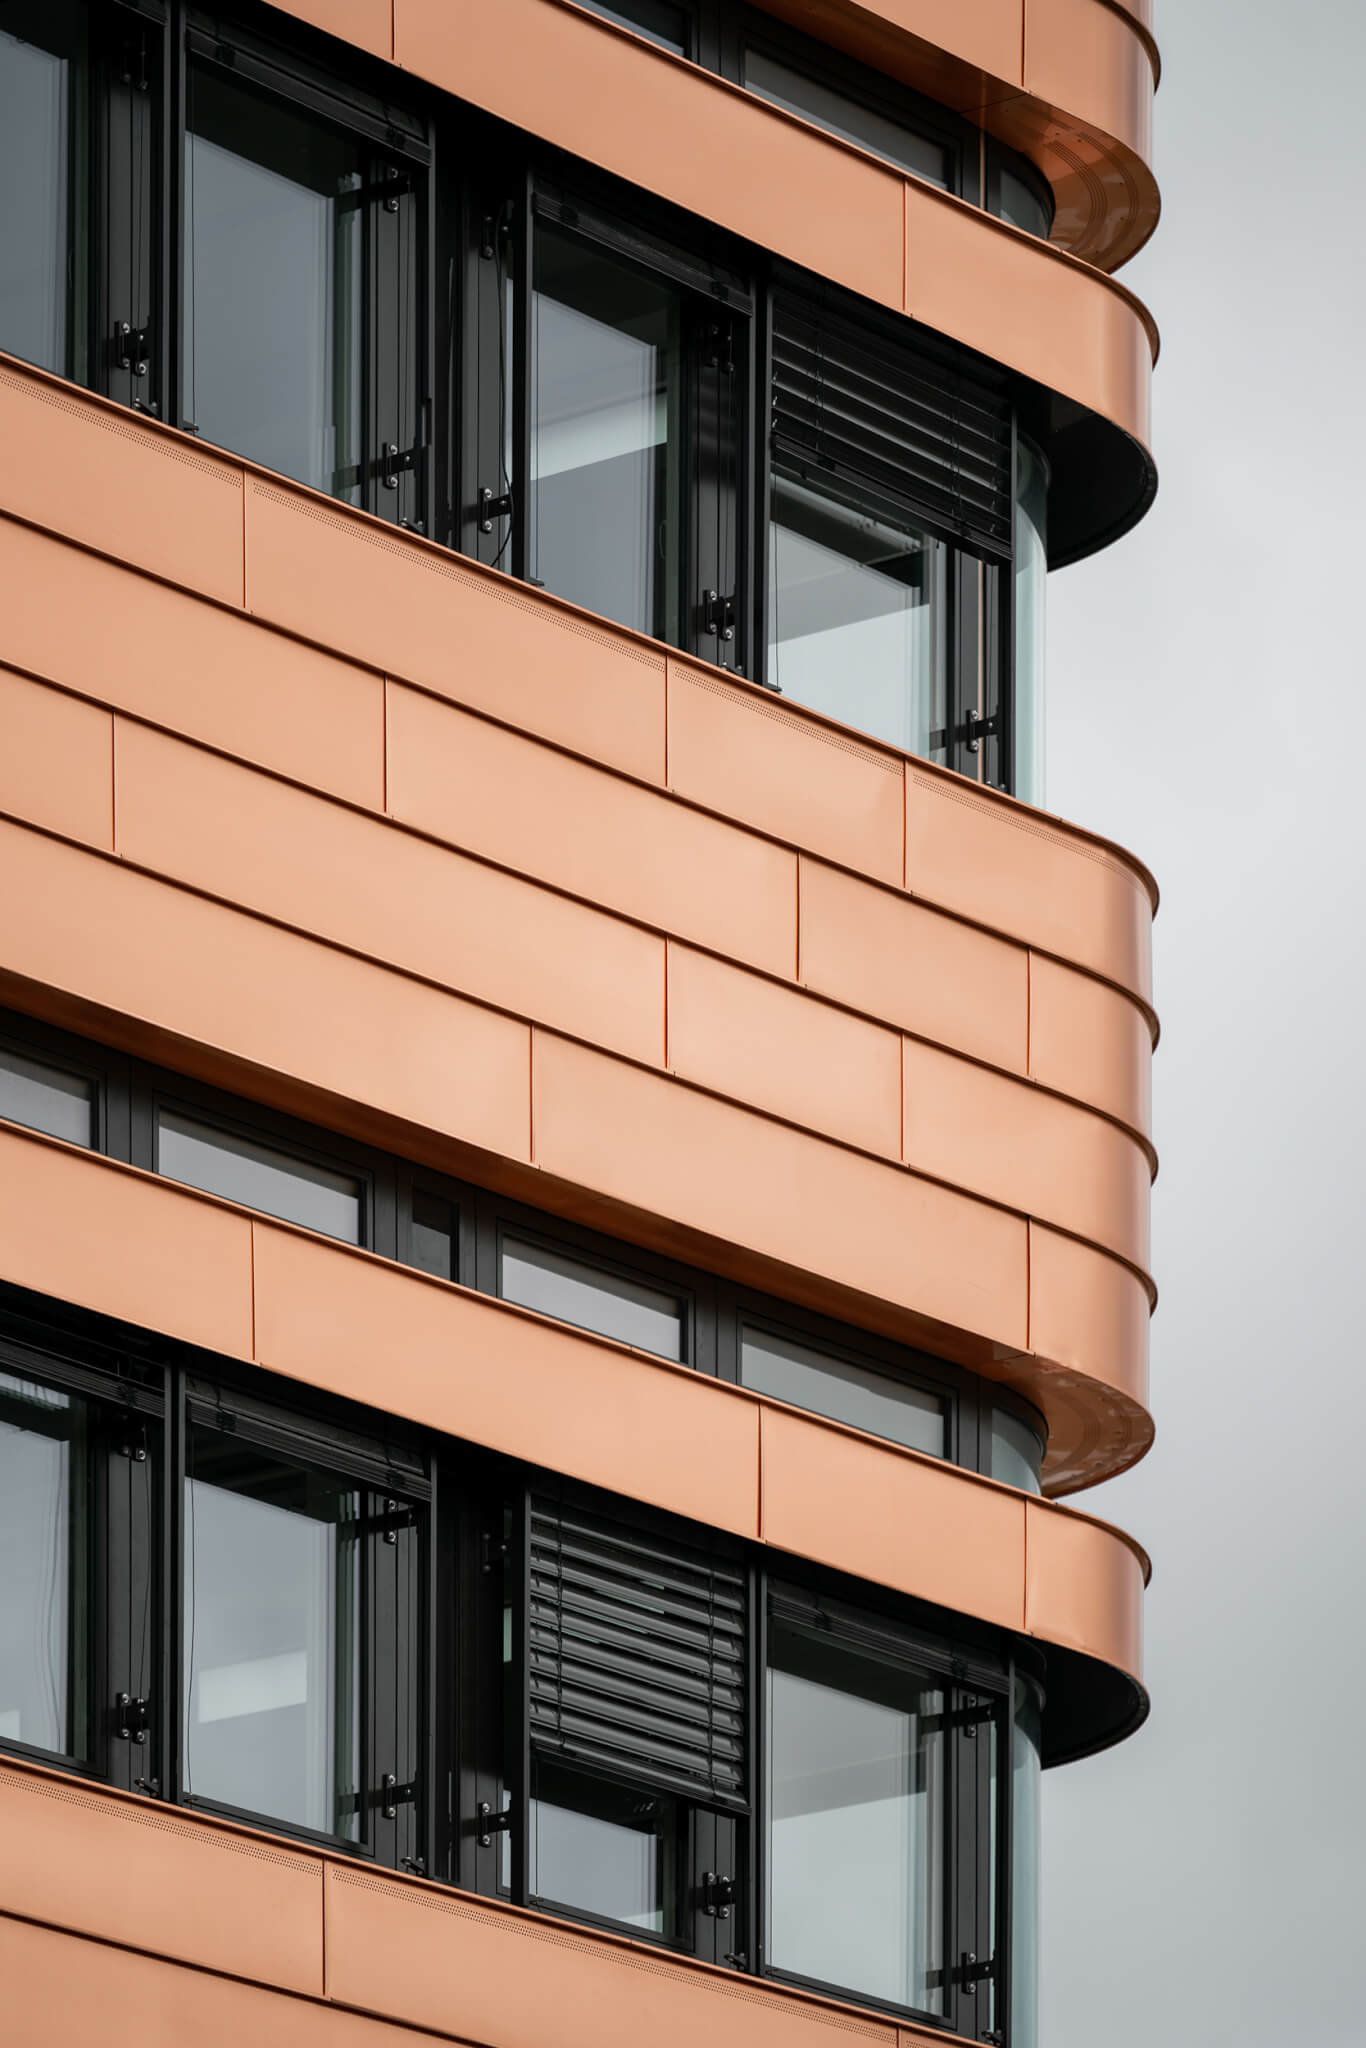 detail of a copper facade